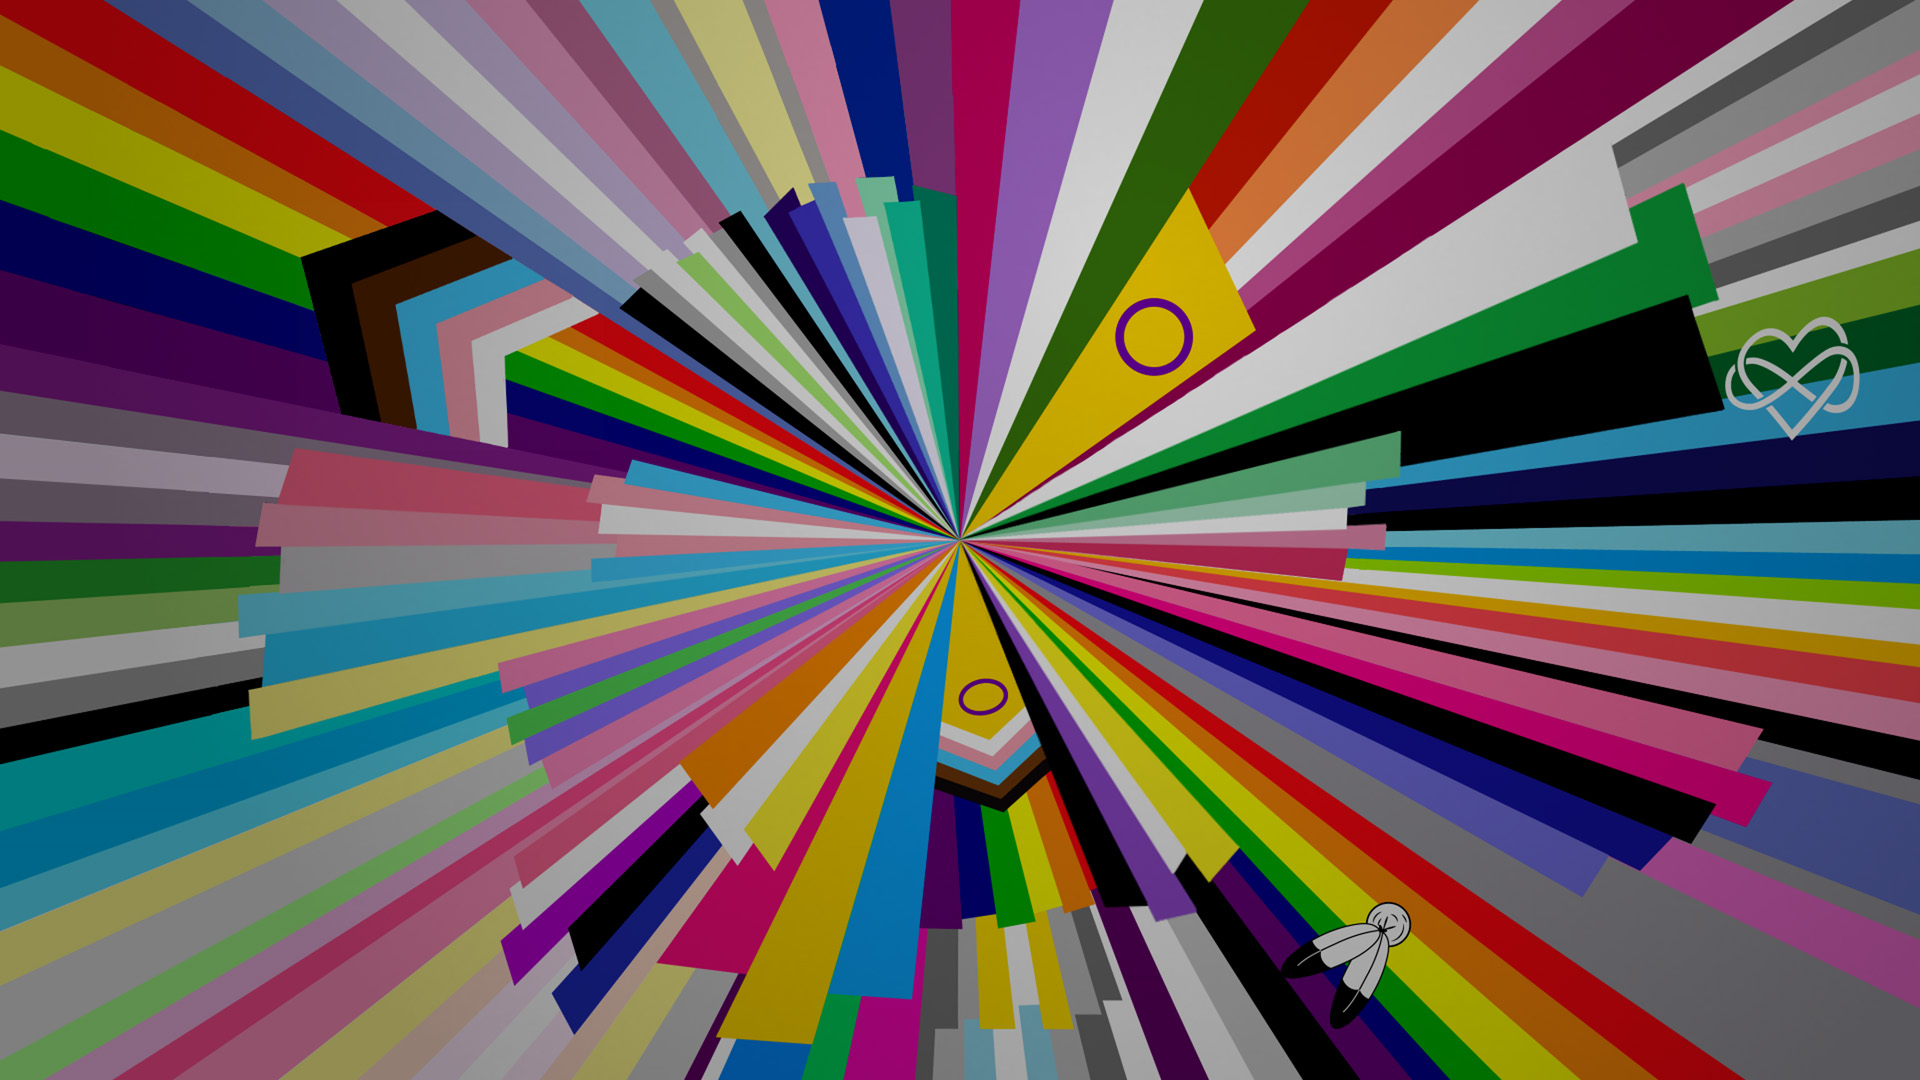 Regenbogenfarbener Hintergrund mit verschiedenen Pride-Flaggen in einem radialen Muster.